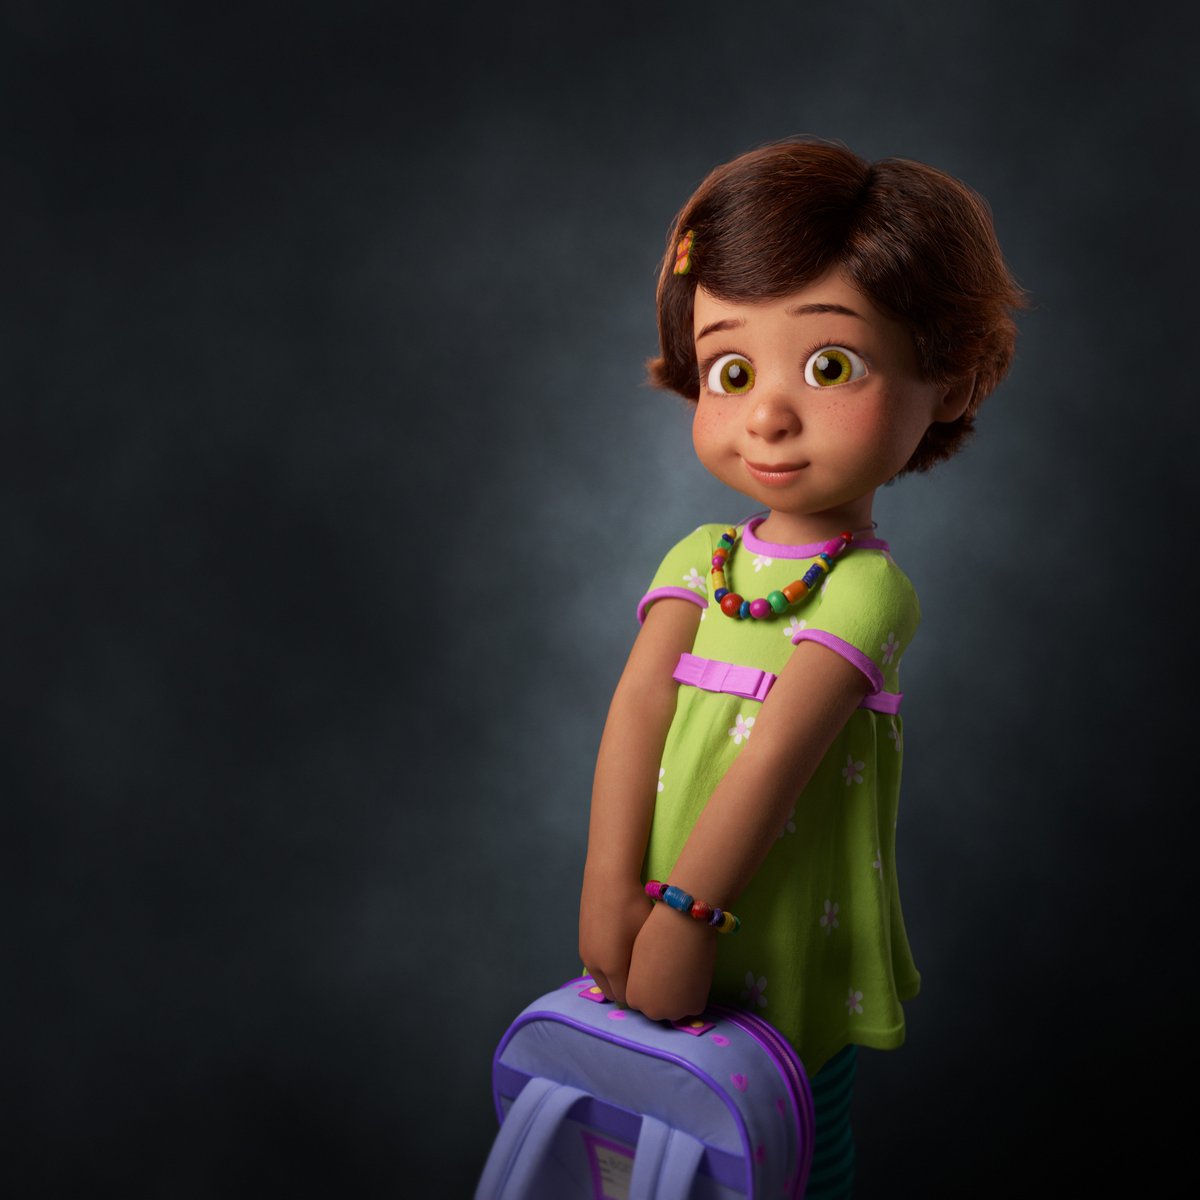 Bonnie, Toy Story Wiki